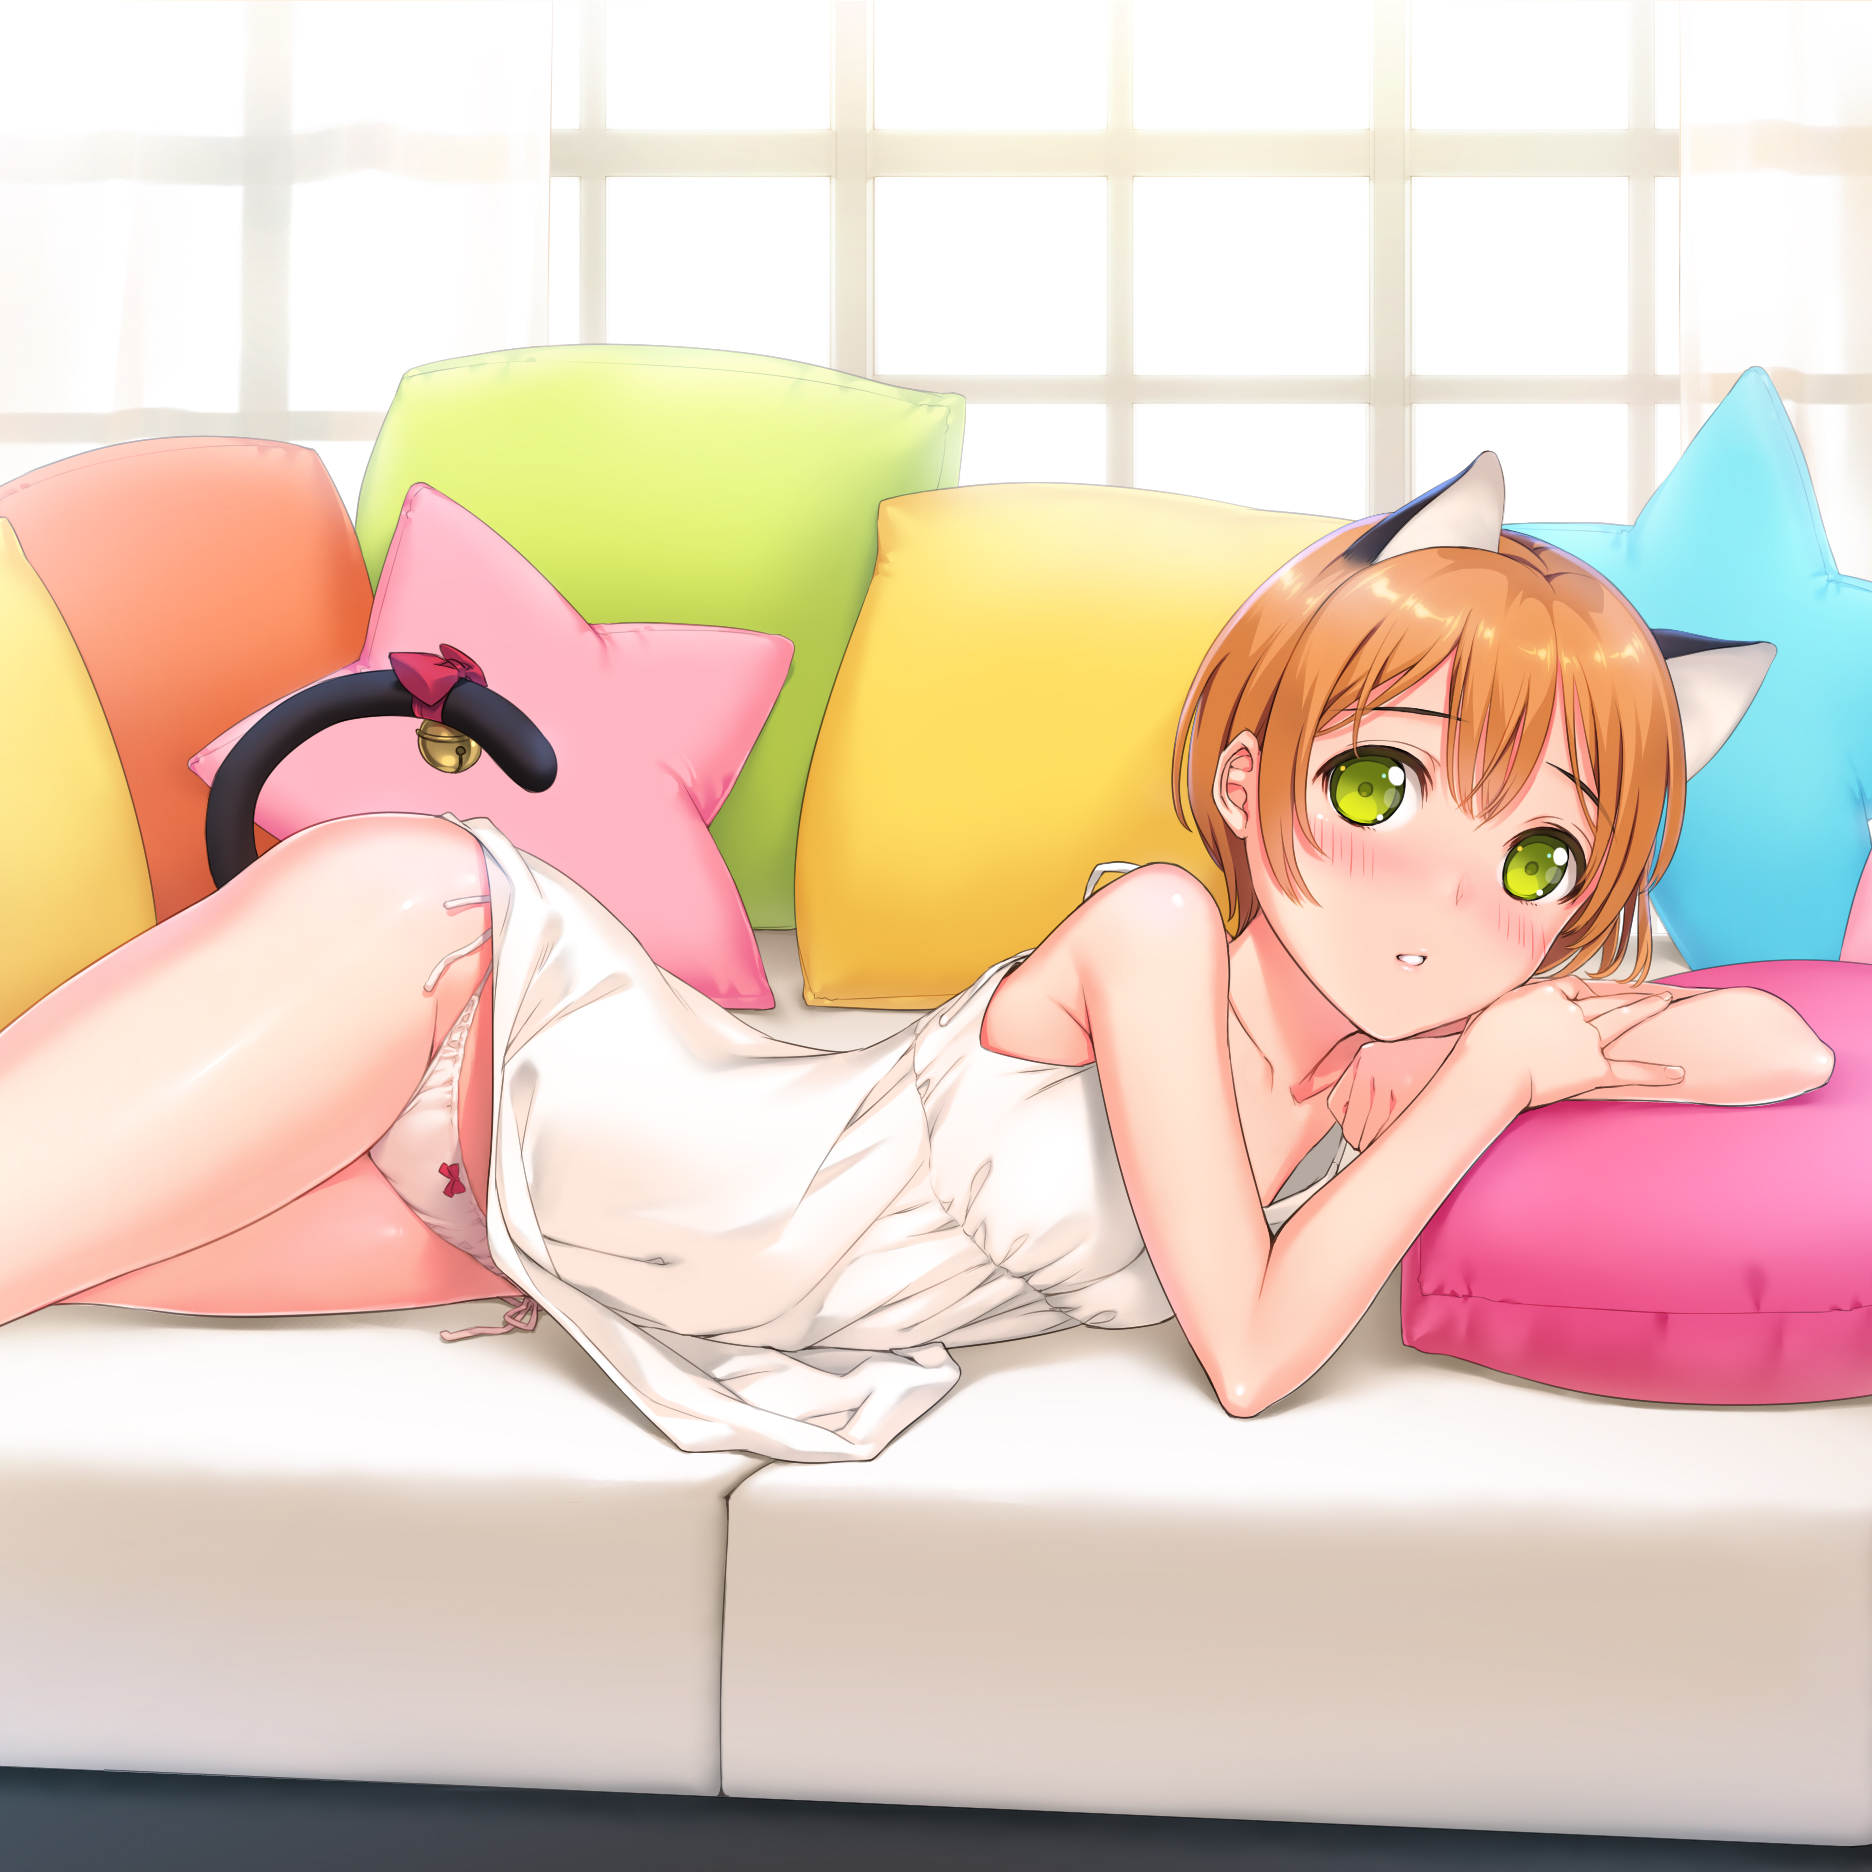 Anime 1872x1872 cat girl lying on couch Hoshizora Rin Love Live! anime anime girls artwork Mignon (artist)